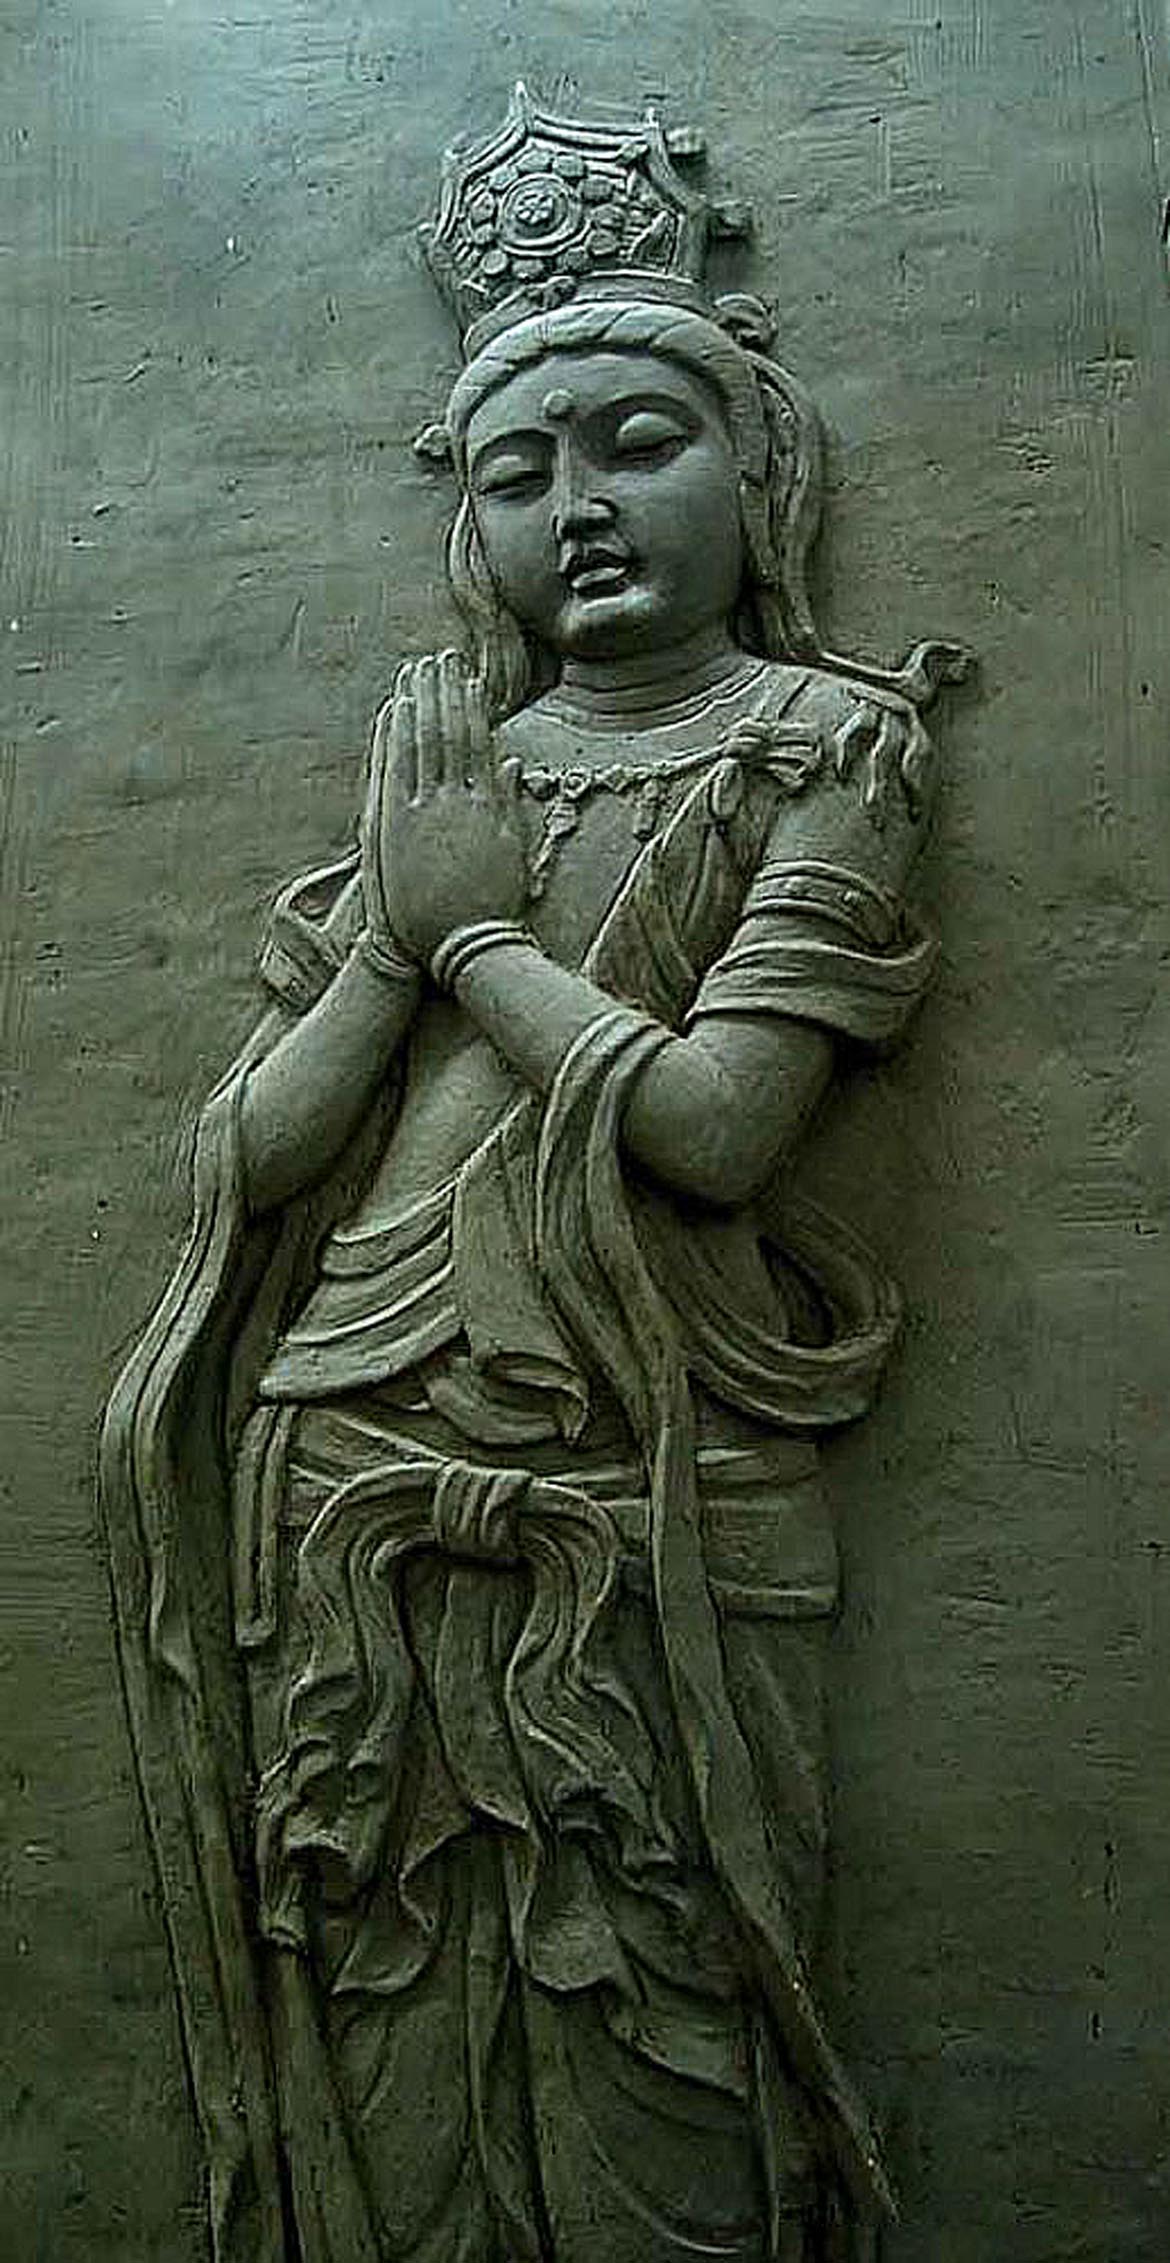 博仟北京雕塑公司创作的双手合十菩萨仿古石雕佛像